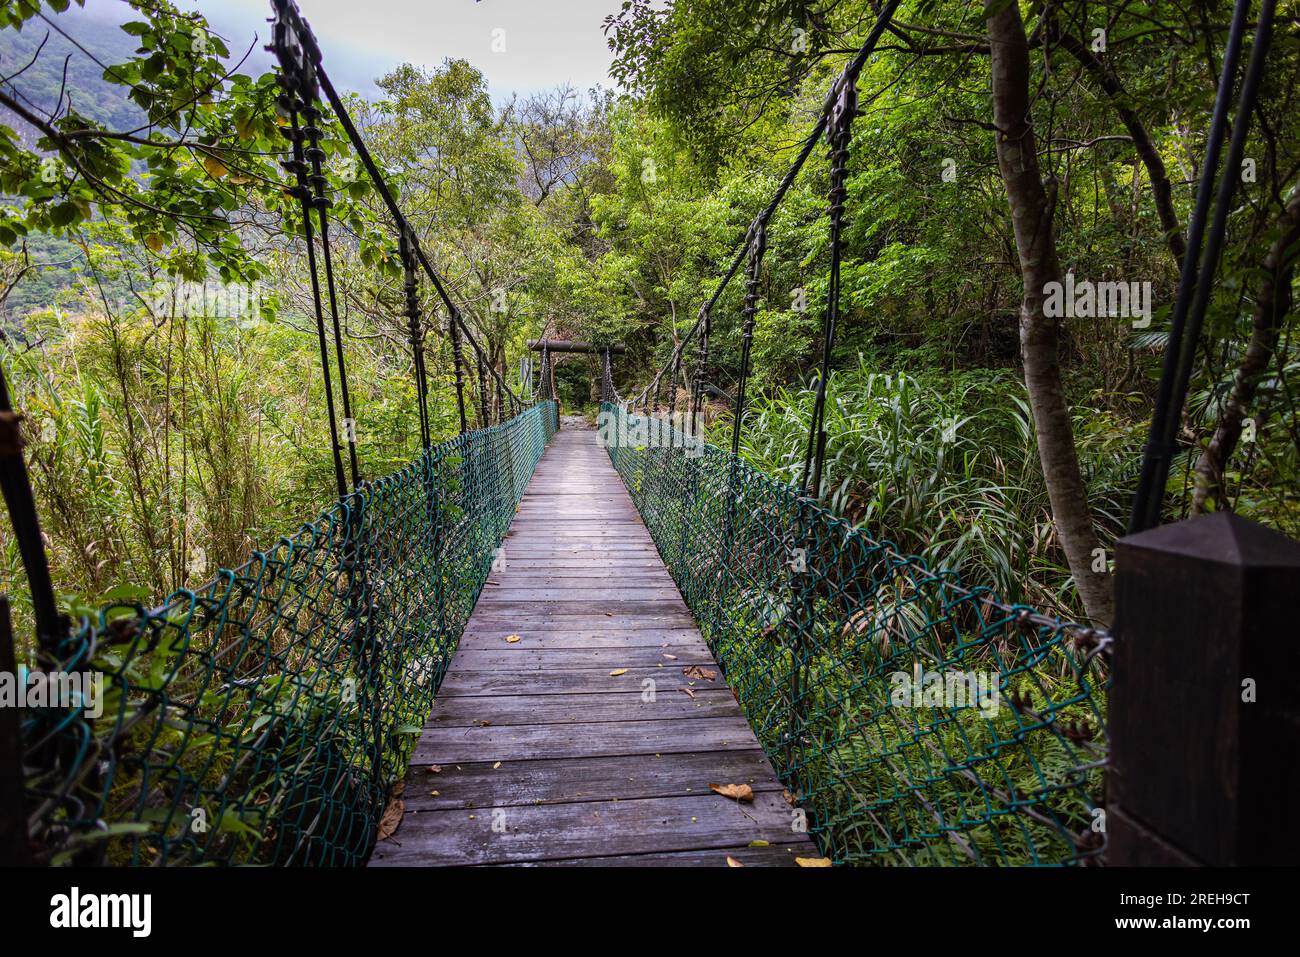 Un pont suspendu à couper le souffle enjambe gracieusement une gorge profonde au milieu des forêts luxuriantes du parc national de Taroko, offrant un voyage envoûtant. La panora Banque D'Images